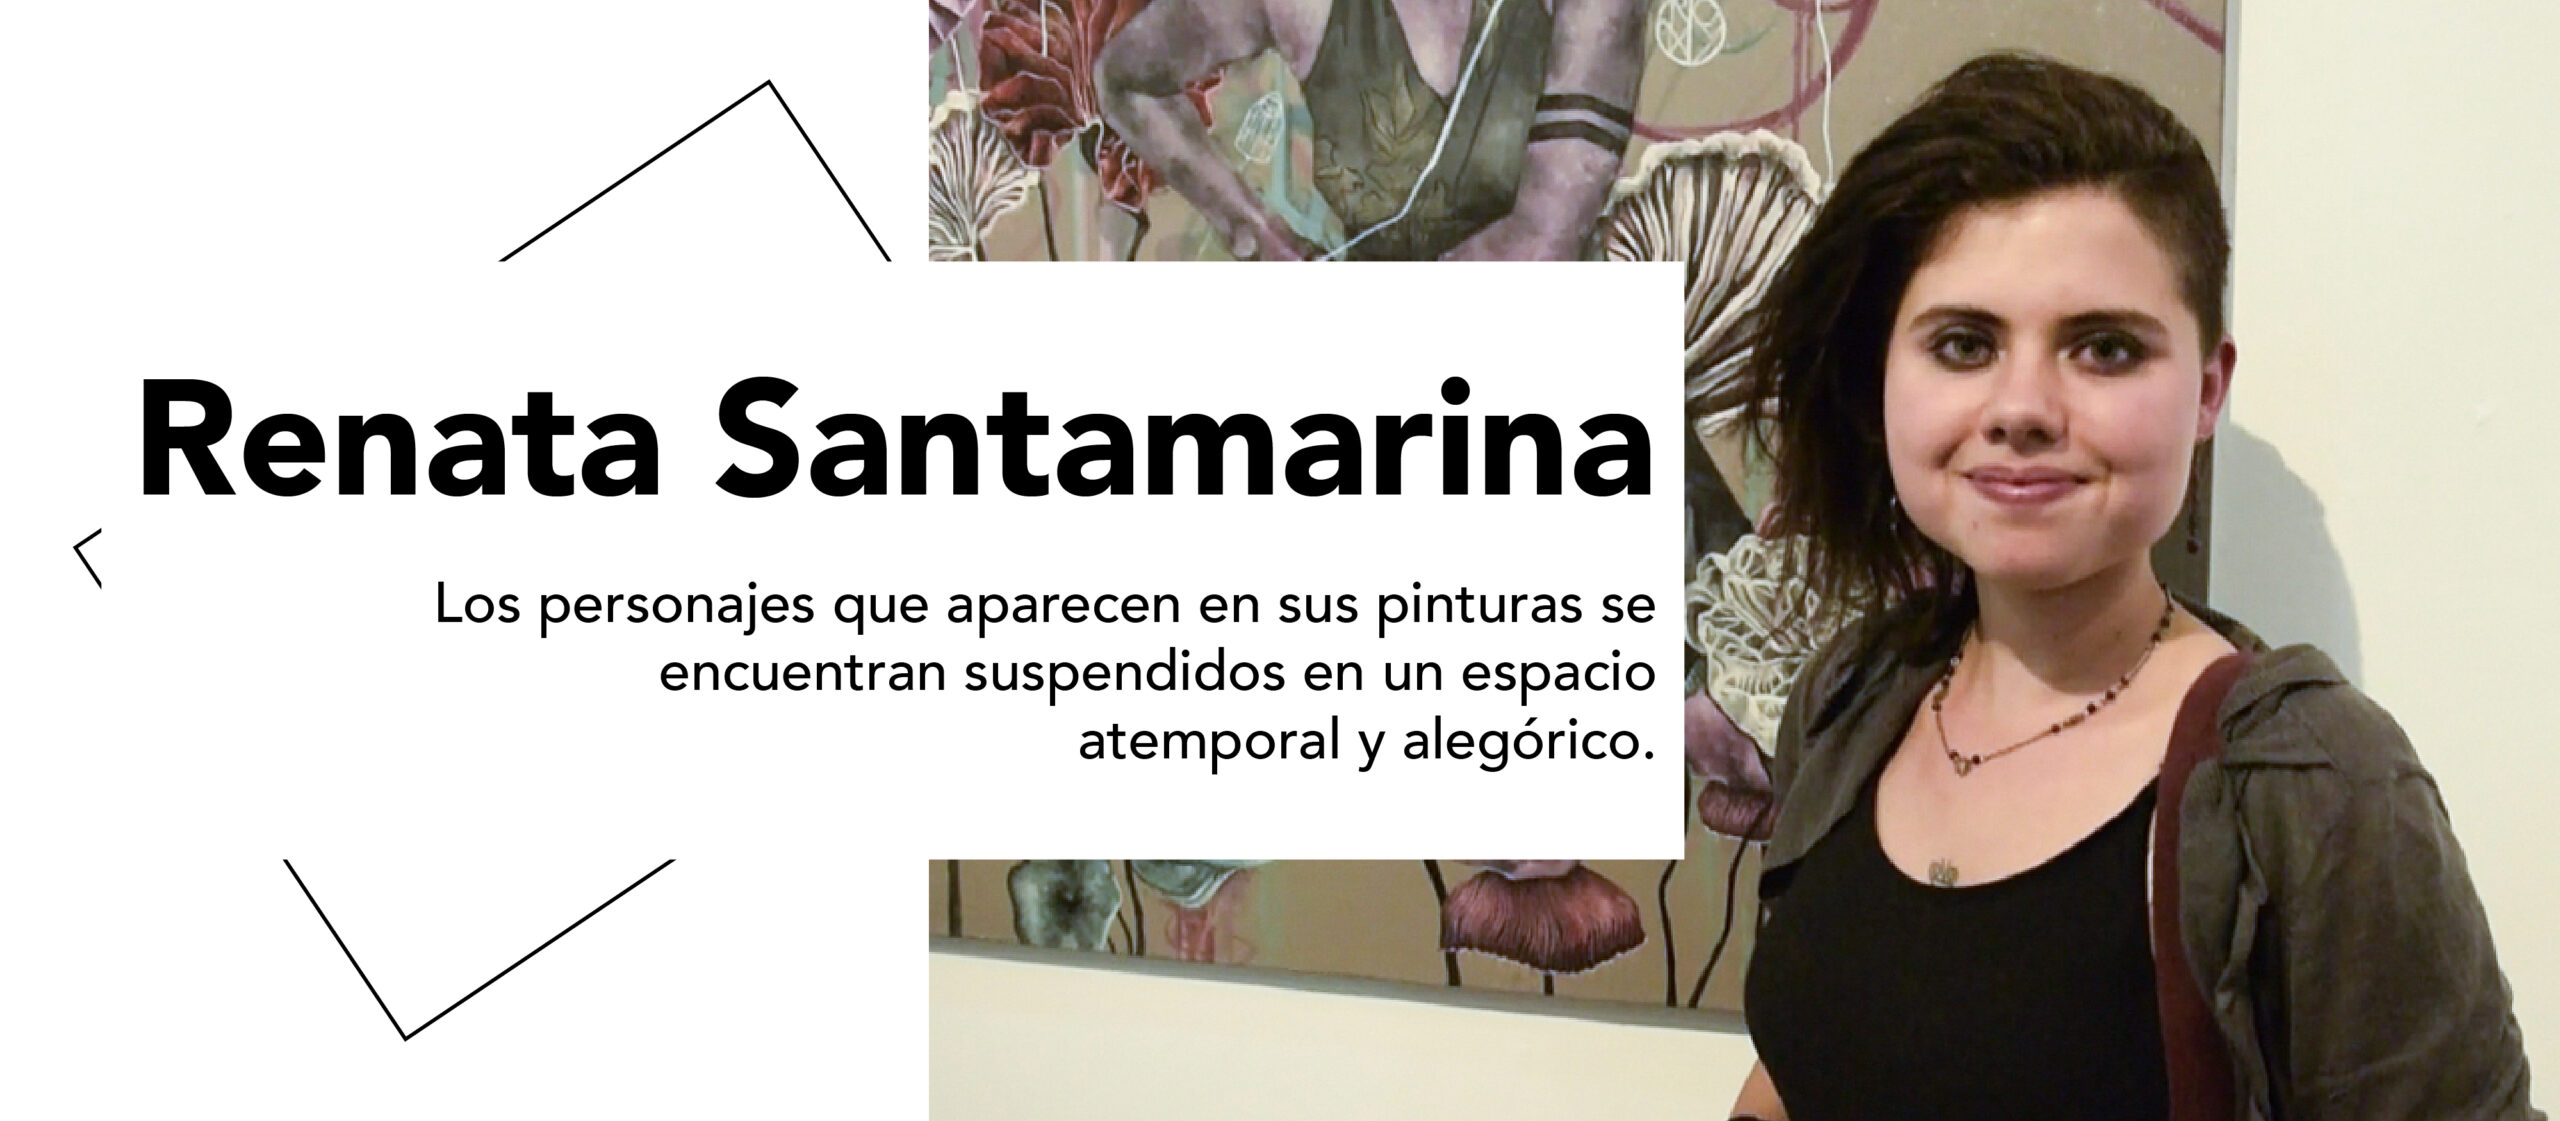 Renata Santamarina